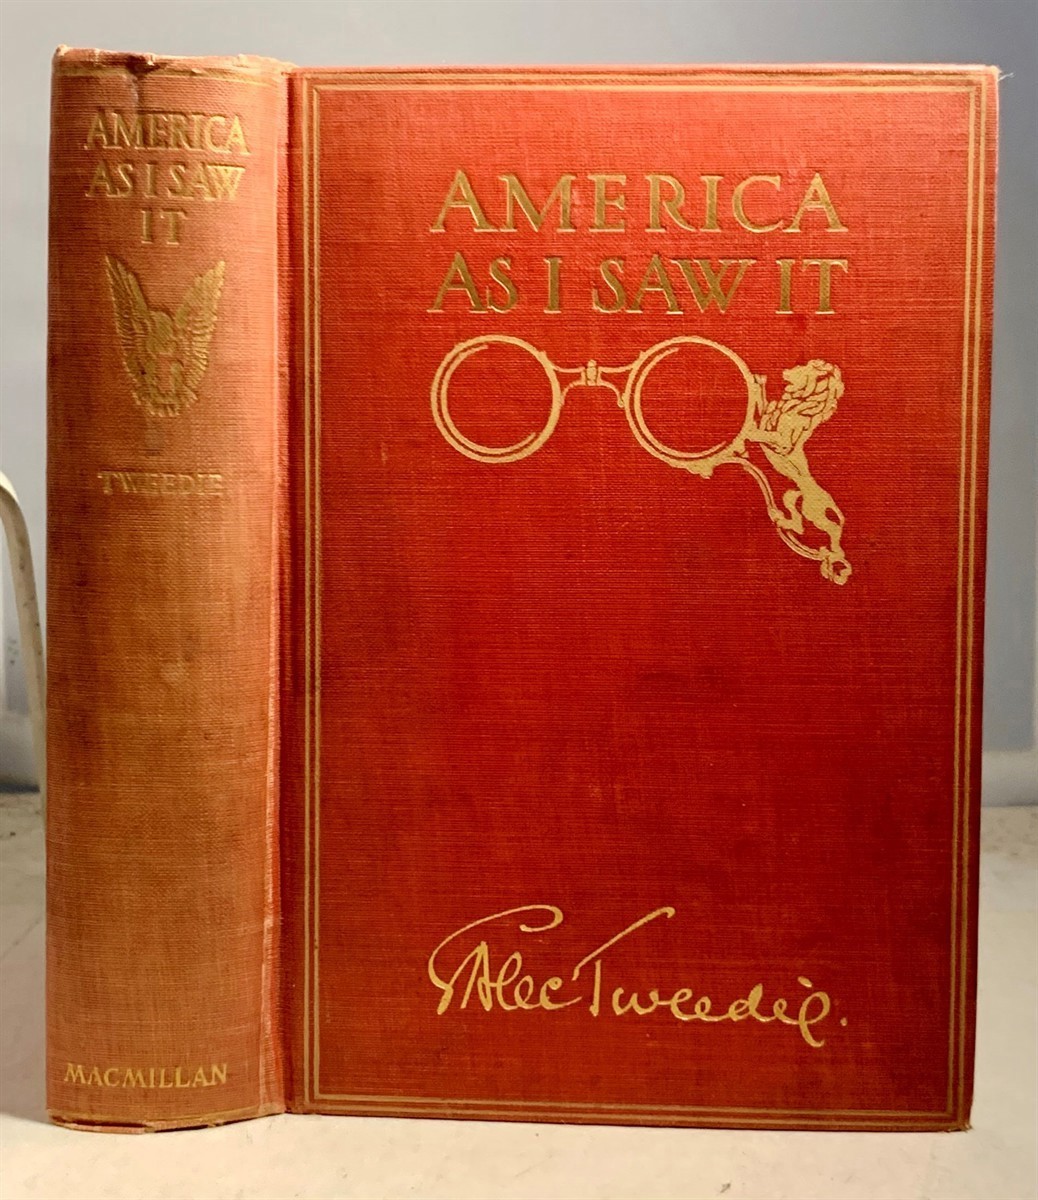 ALEC-TWEEDIE, MRS. (ETHEL BRILLIANA TWEEDIE) - America As I Saw It Or America Revisited